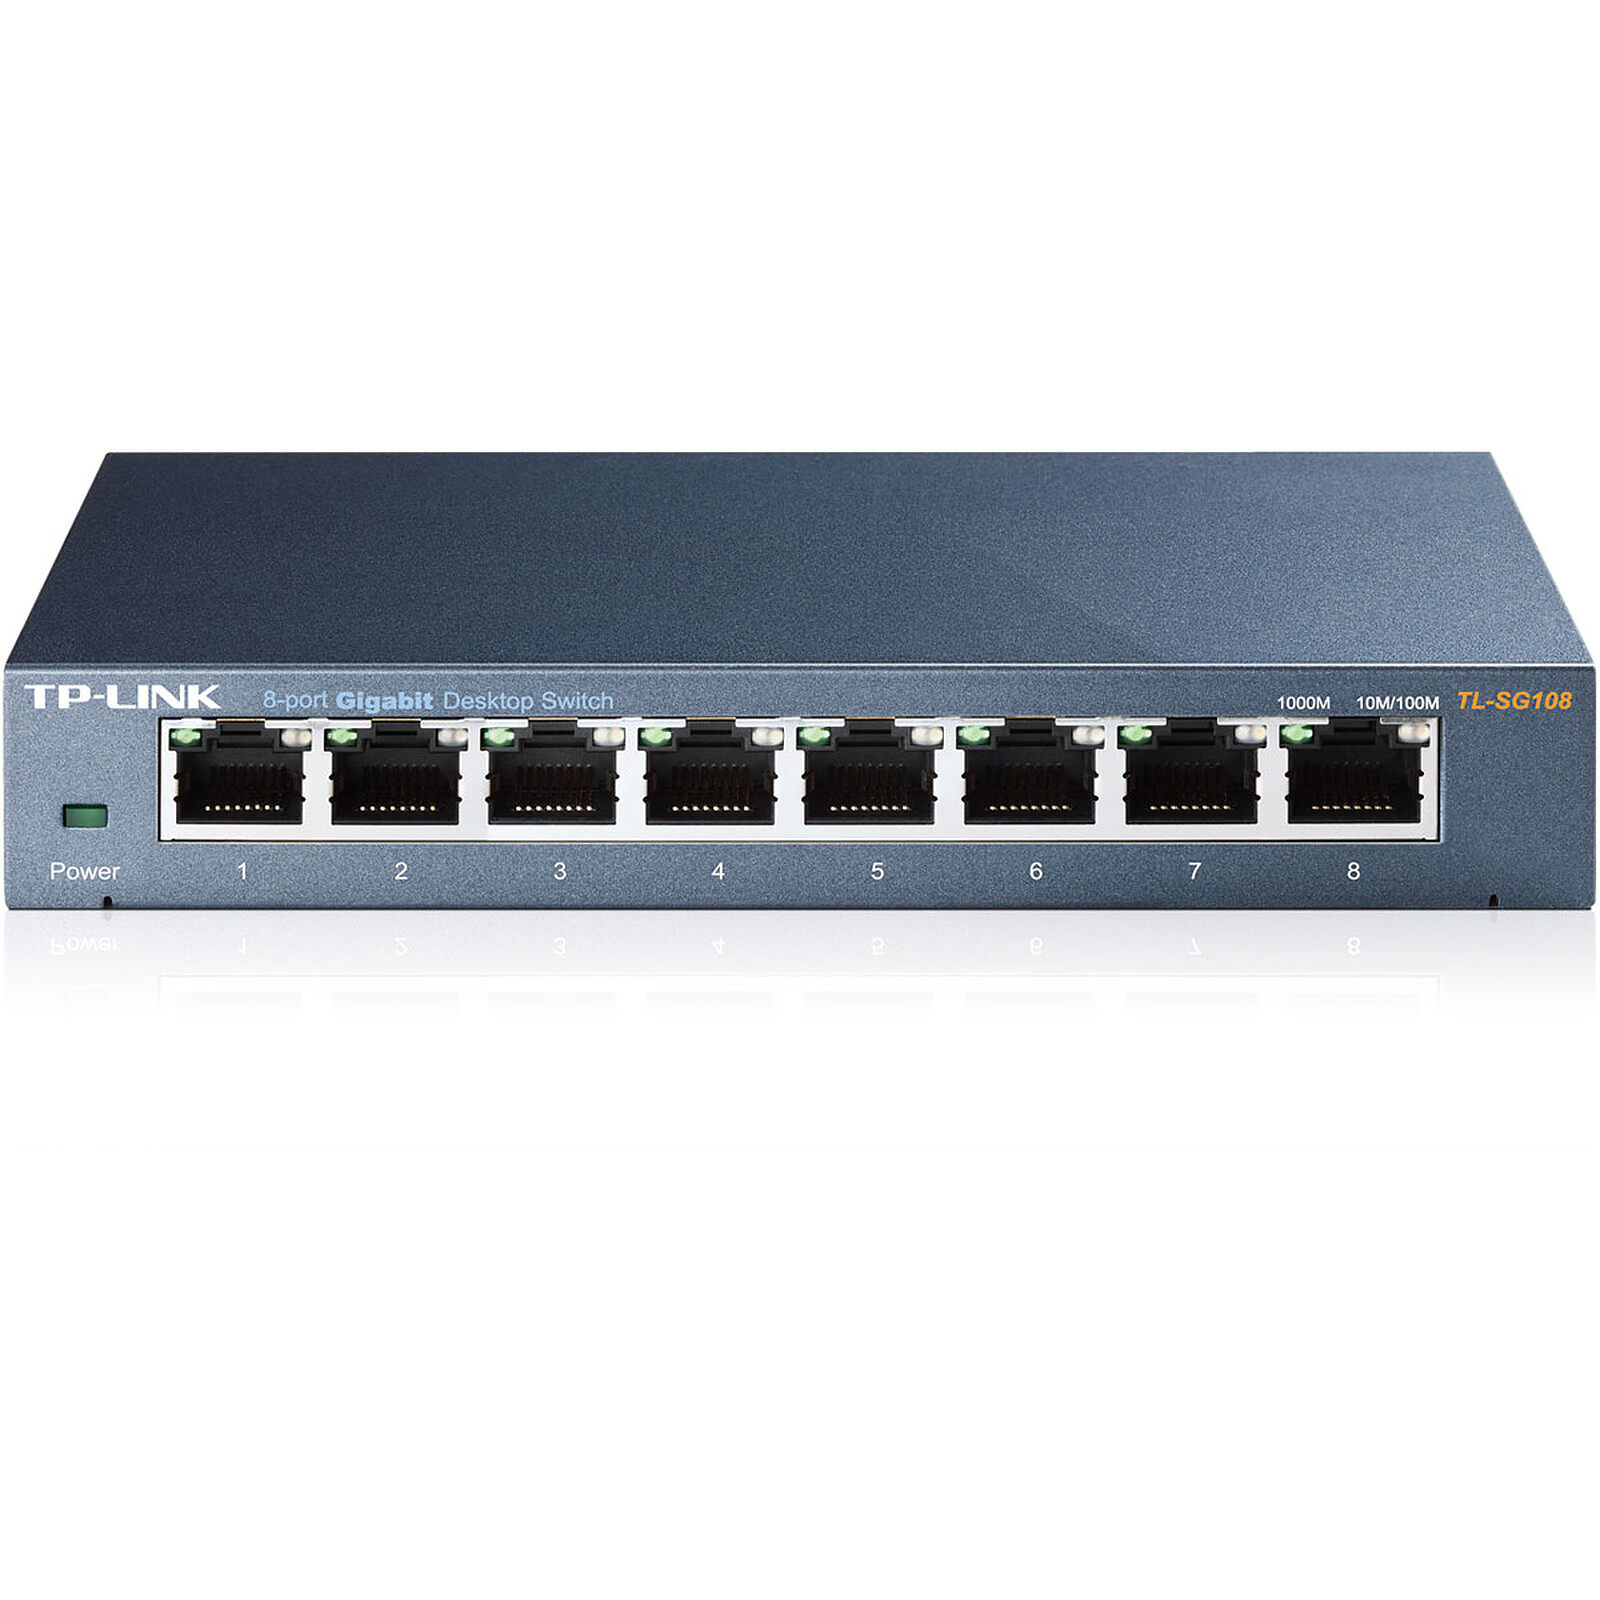 รายละเอียดเพิ่มเติมเกี่ยวกับ TL-SG108 TP-Link สวิตซ์ 8-Port 10/100/1000Mbps Desktop Switch By Vnix Group